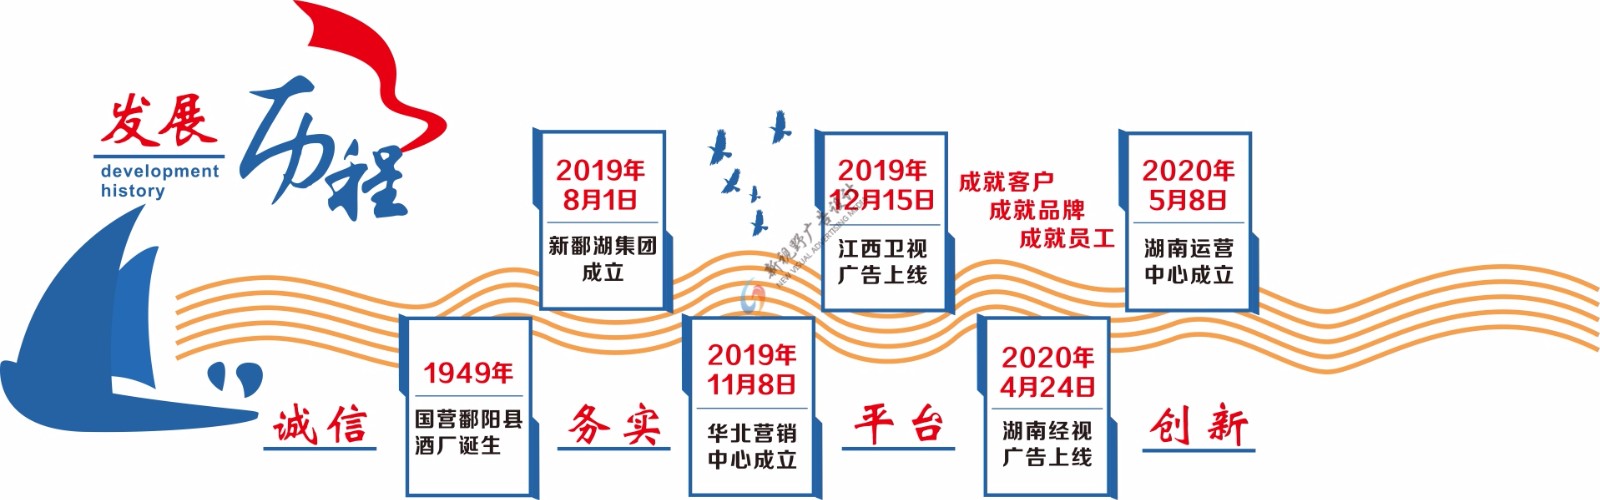 南昌万博matext手机登录广告公司承接鄱湖集团文化墙设计安装